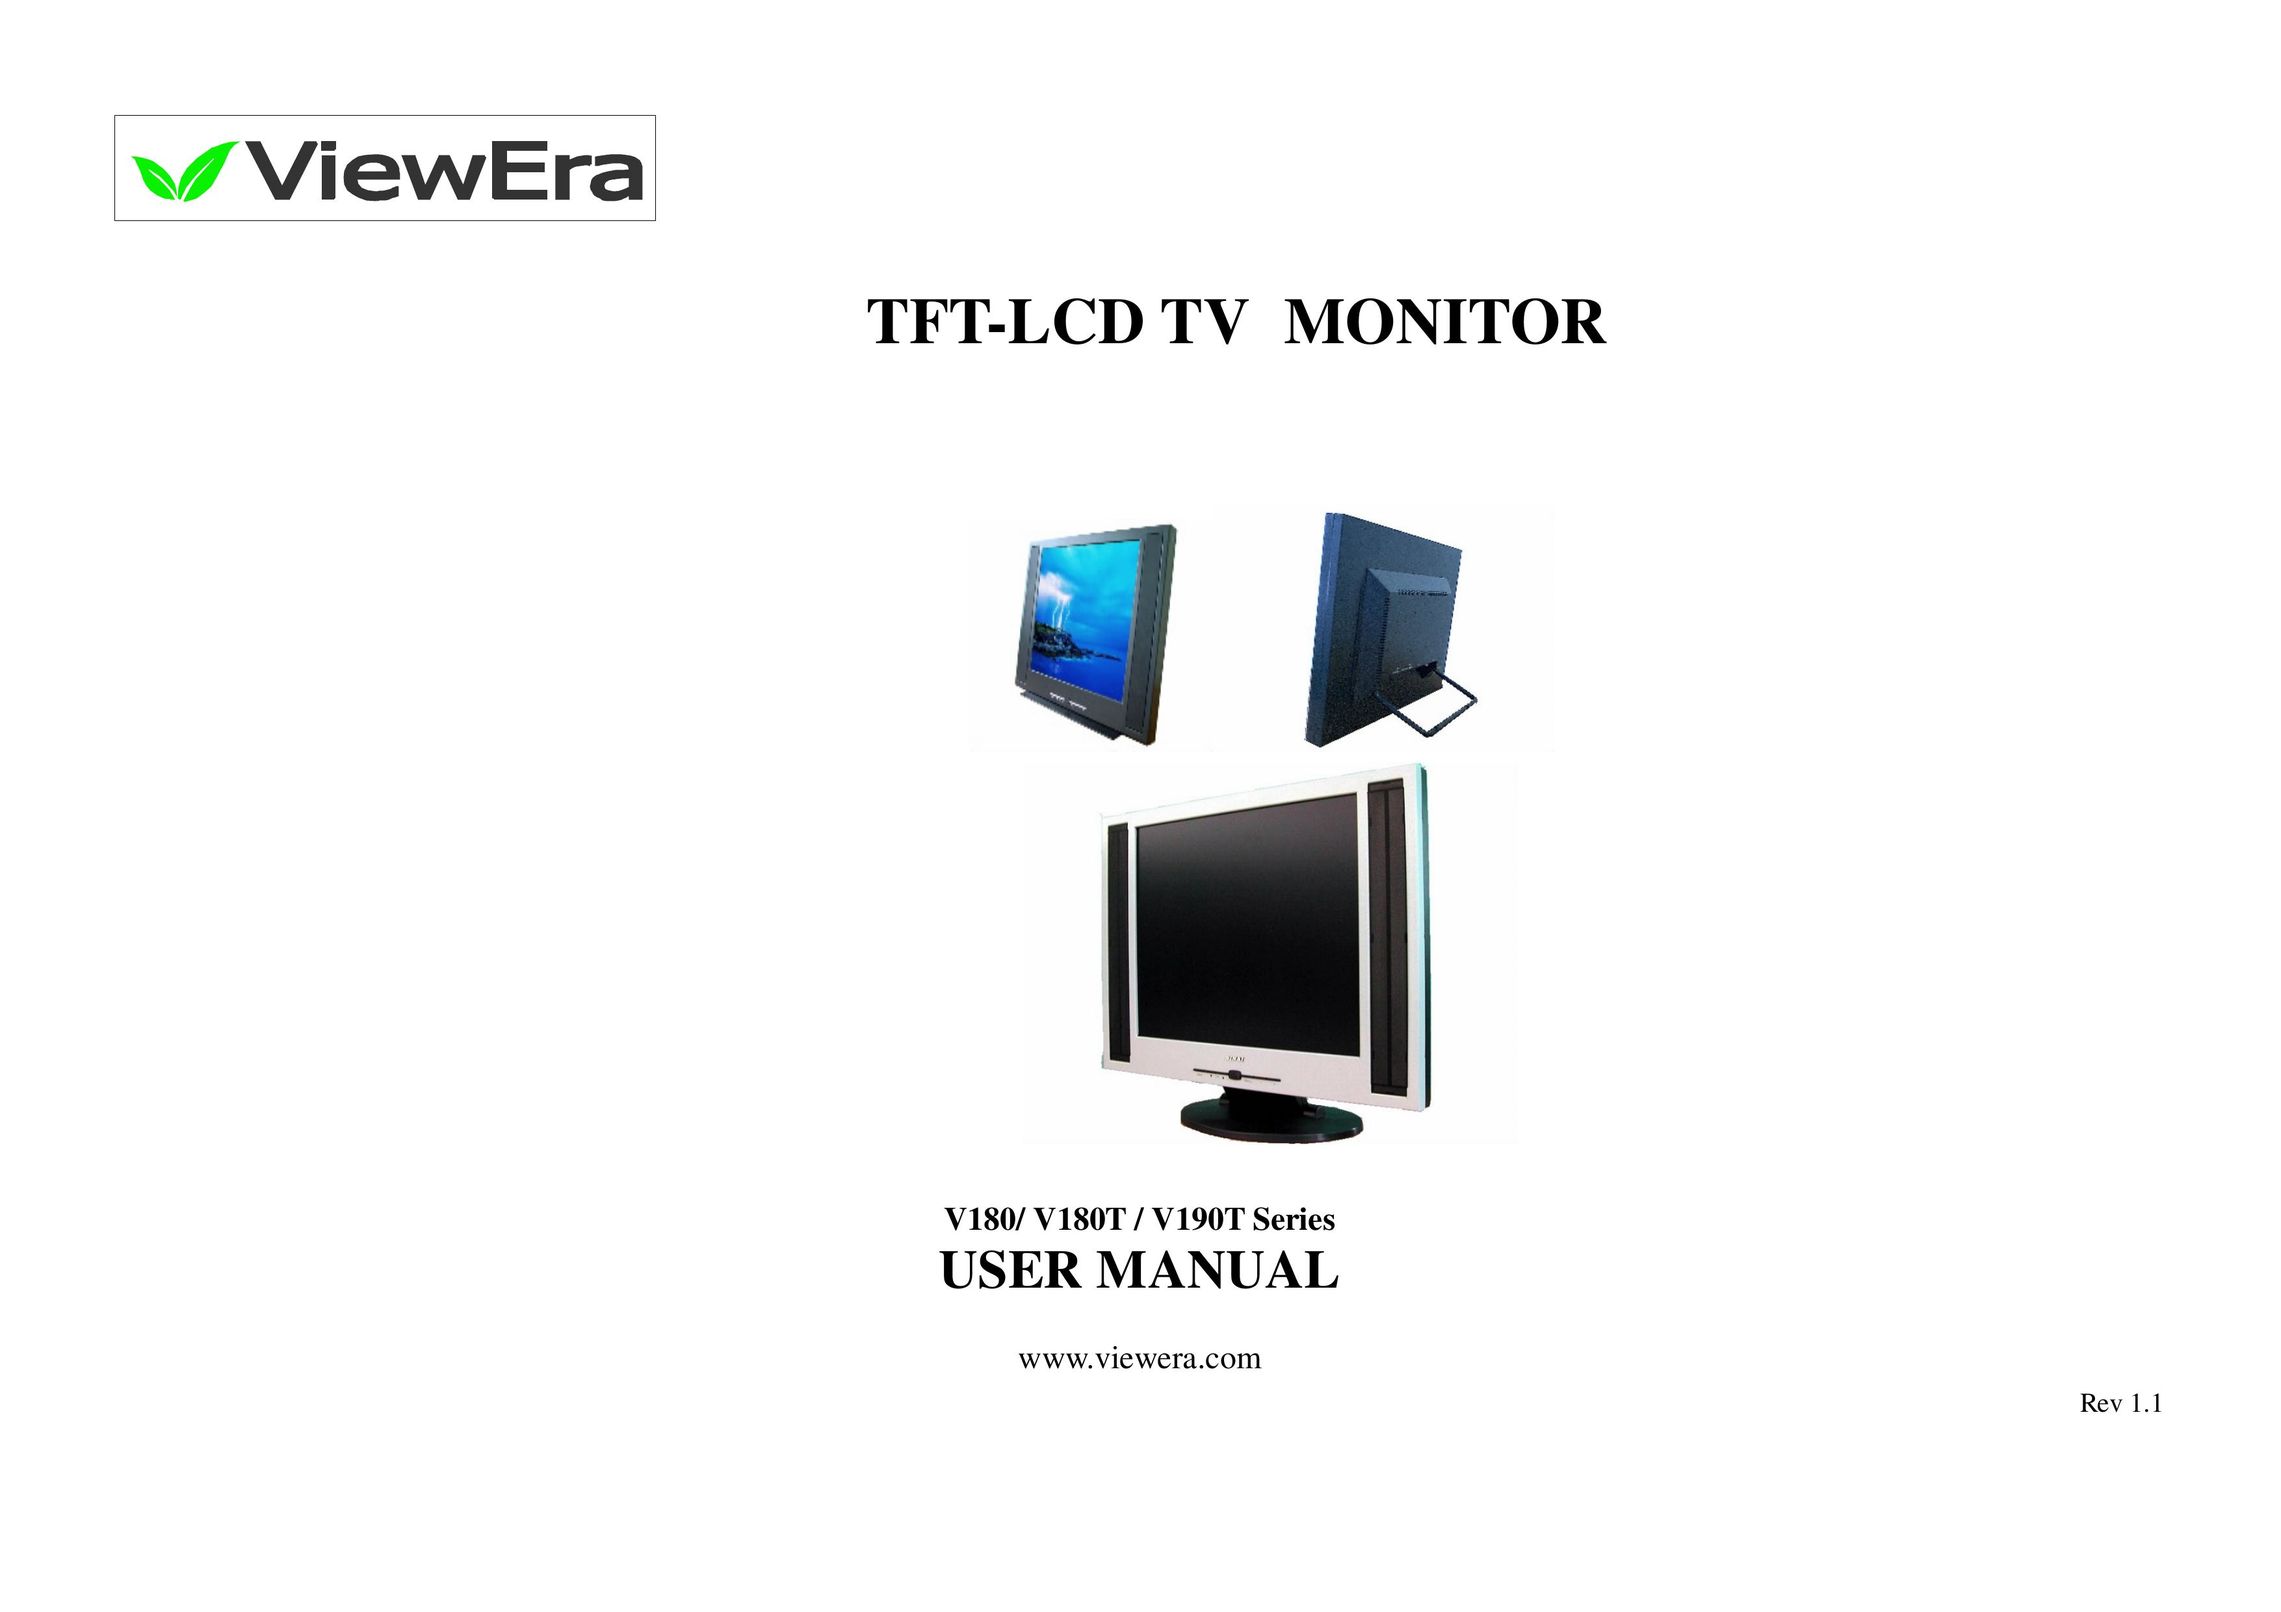 ViewEra V180 Series Flat Panel Television User Manual